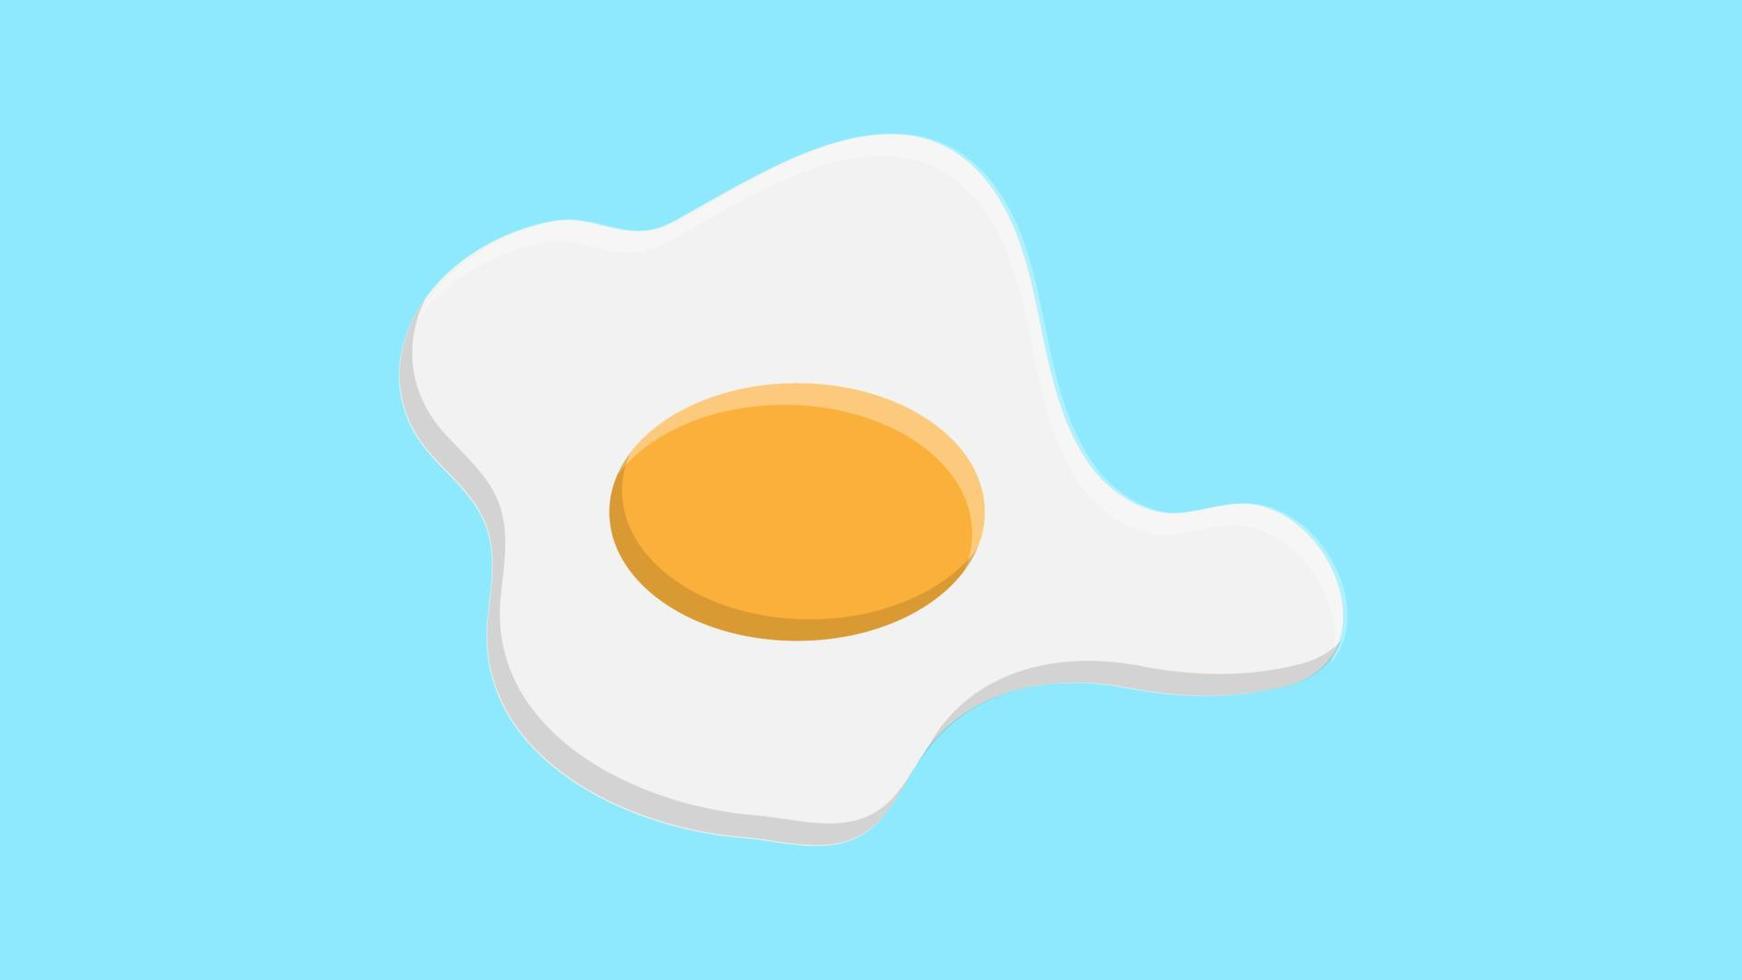 huevos revueltos sobre un fondo azul, ilustración vectorial. huevo con yema amarilla. desayuno delicioso. huevos fritos con proteína blanca. huevo frito para el desayuno inglés vector